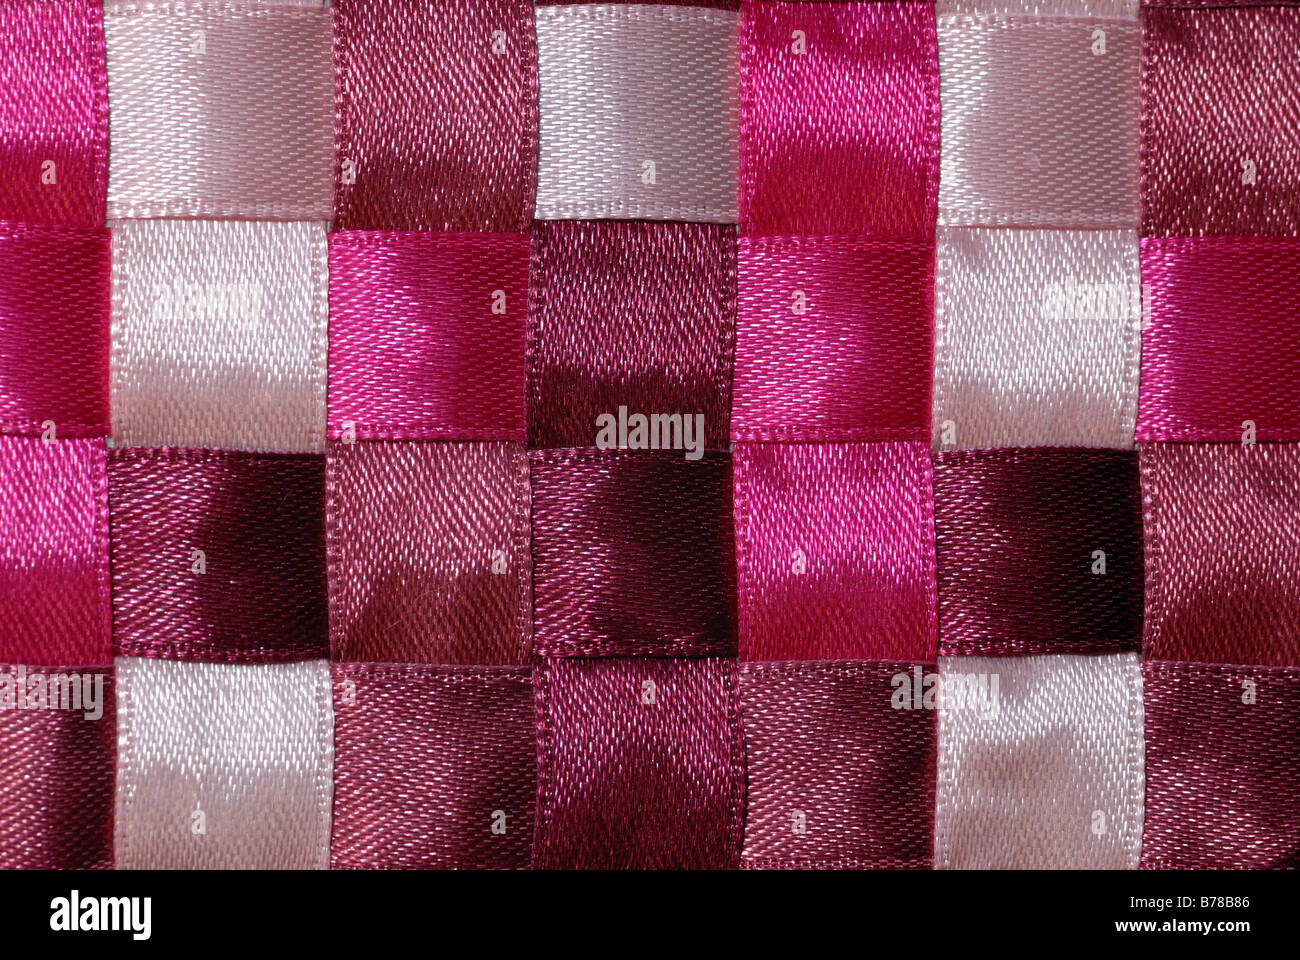 Nastro Rosa di variare i colori tessuto in uno schema a scacchiera. Foto Stock